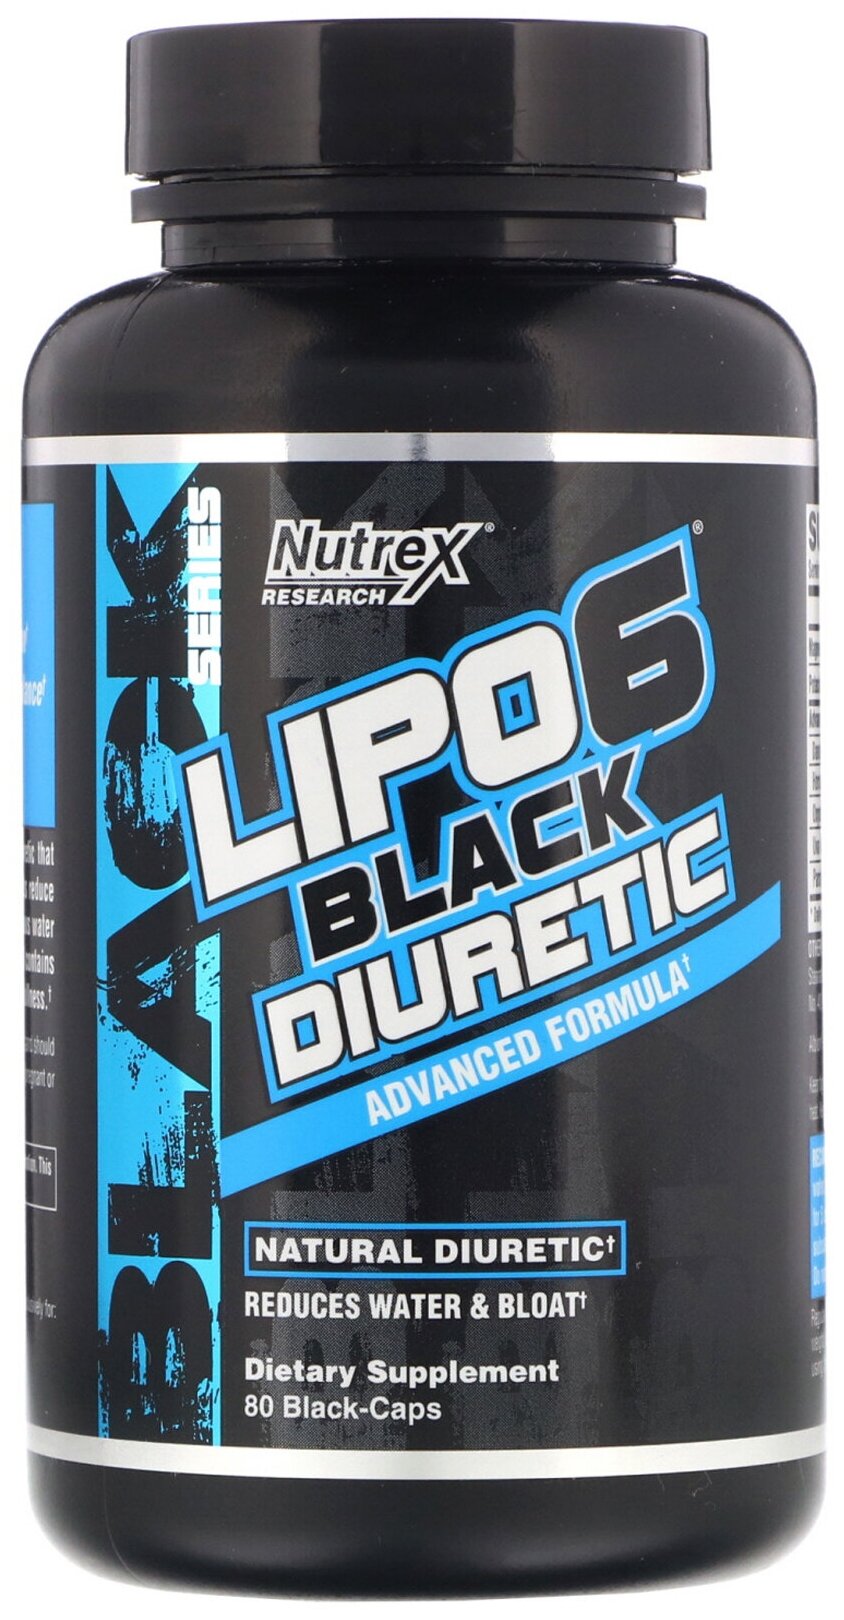 Жиросжигатель Nutrex Lipo 6 Black Diuretic, 80 капсул / Для похудения мужчин и женщин